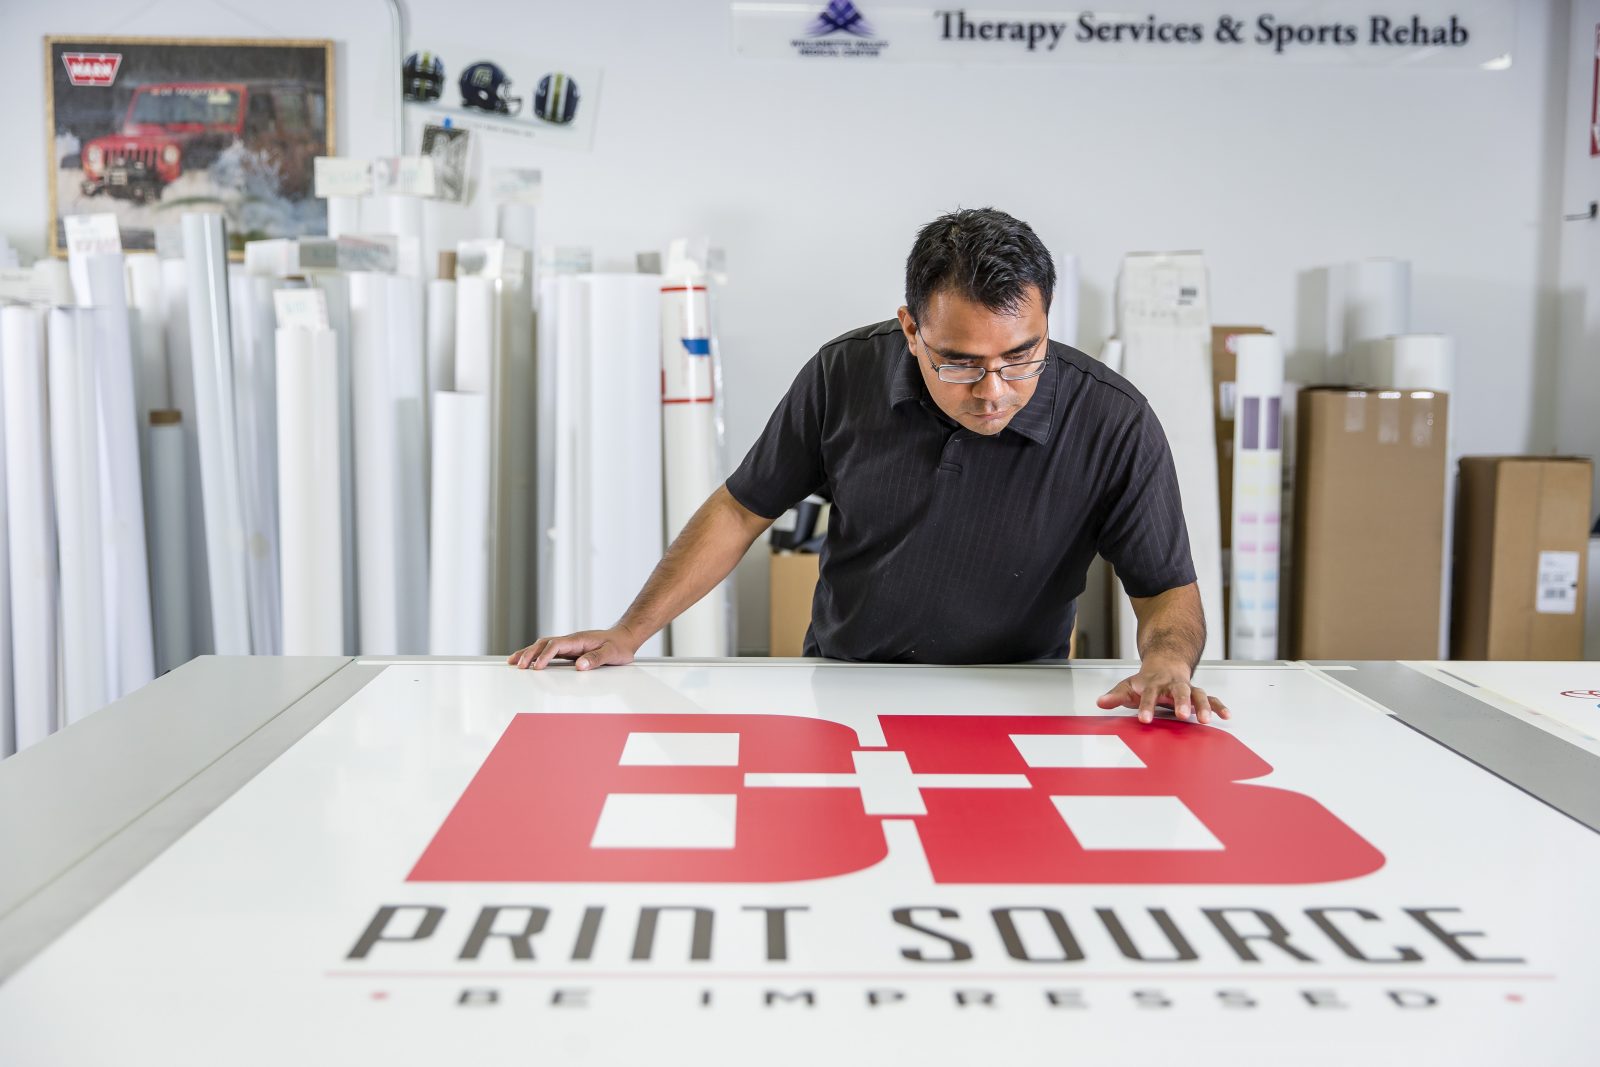 B & B Print Source printed logo on table